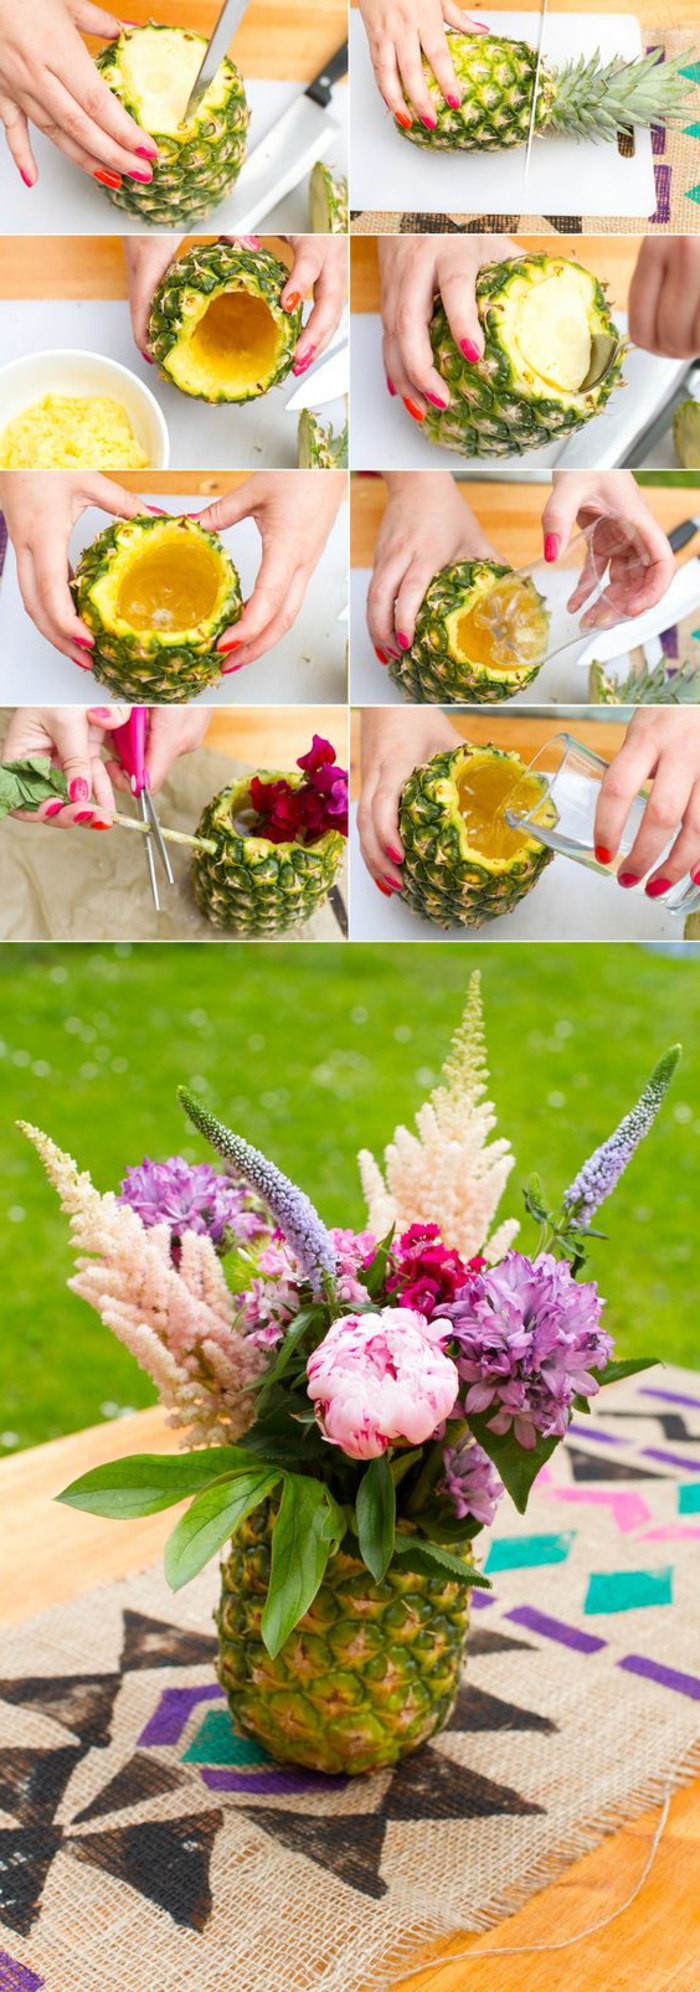 tischdeko geburtstag, frische idee mit ananas und blumen, eine exotische motivparty veranstalten und richtig dazu dekorieren, ananas als vase für die blumen